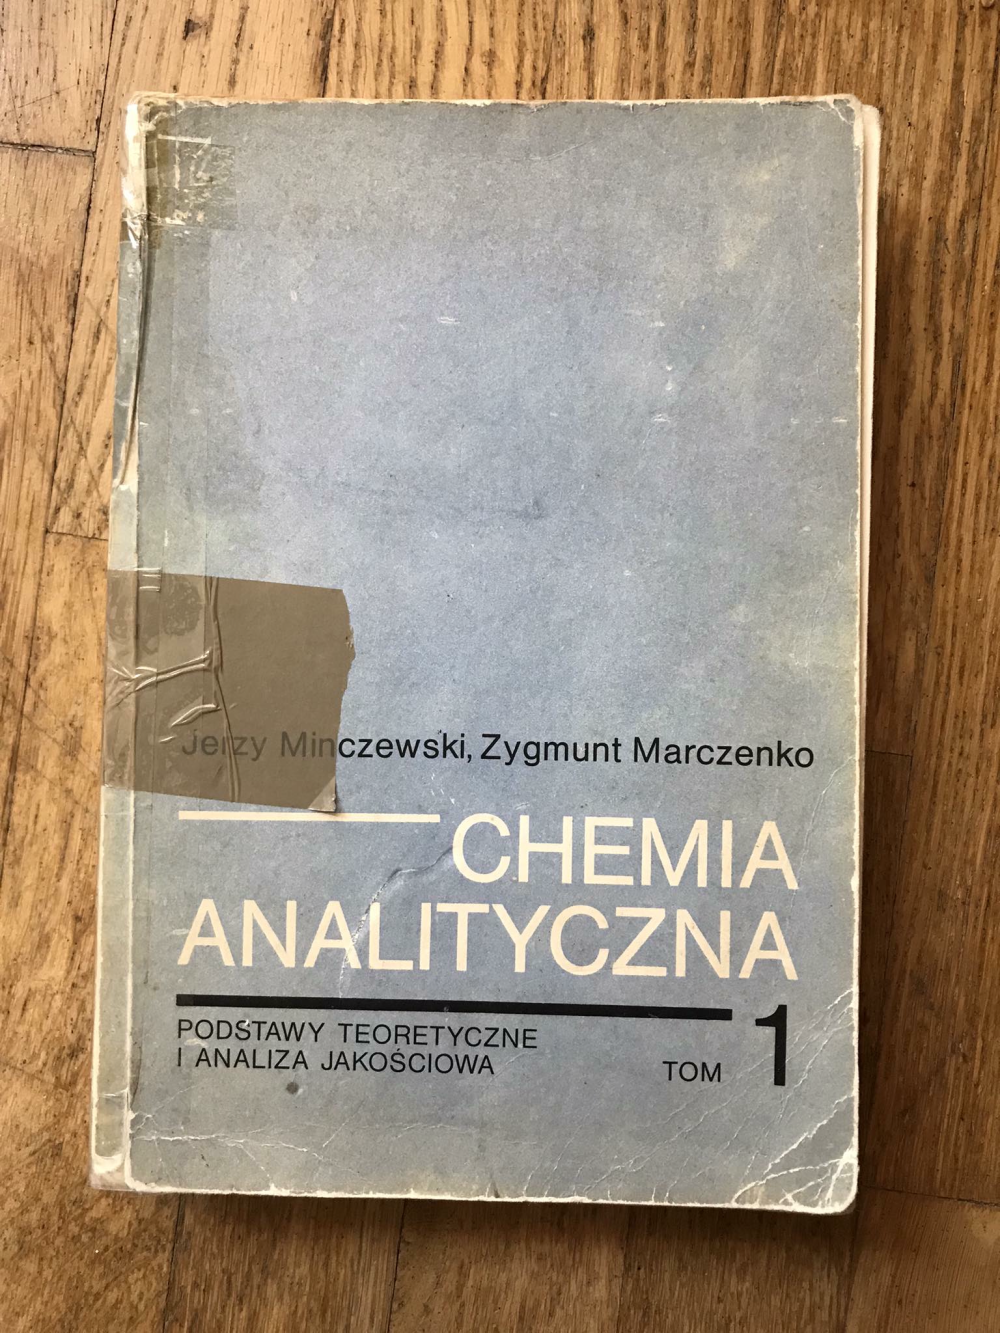 Podręcznik dla studentów książka chemia analityczna tom 1